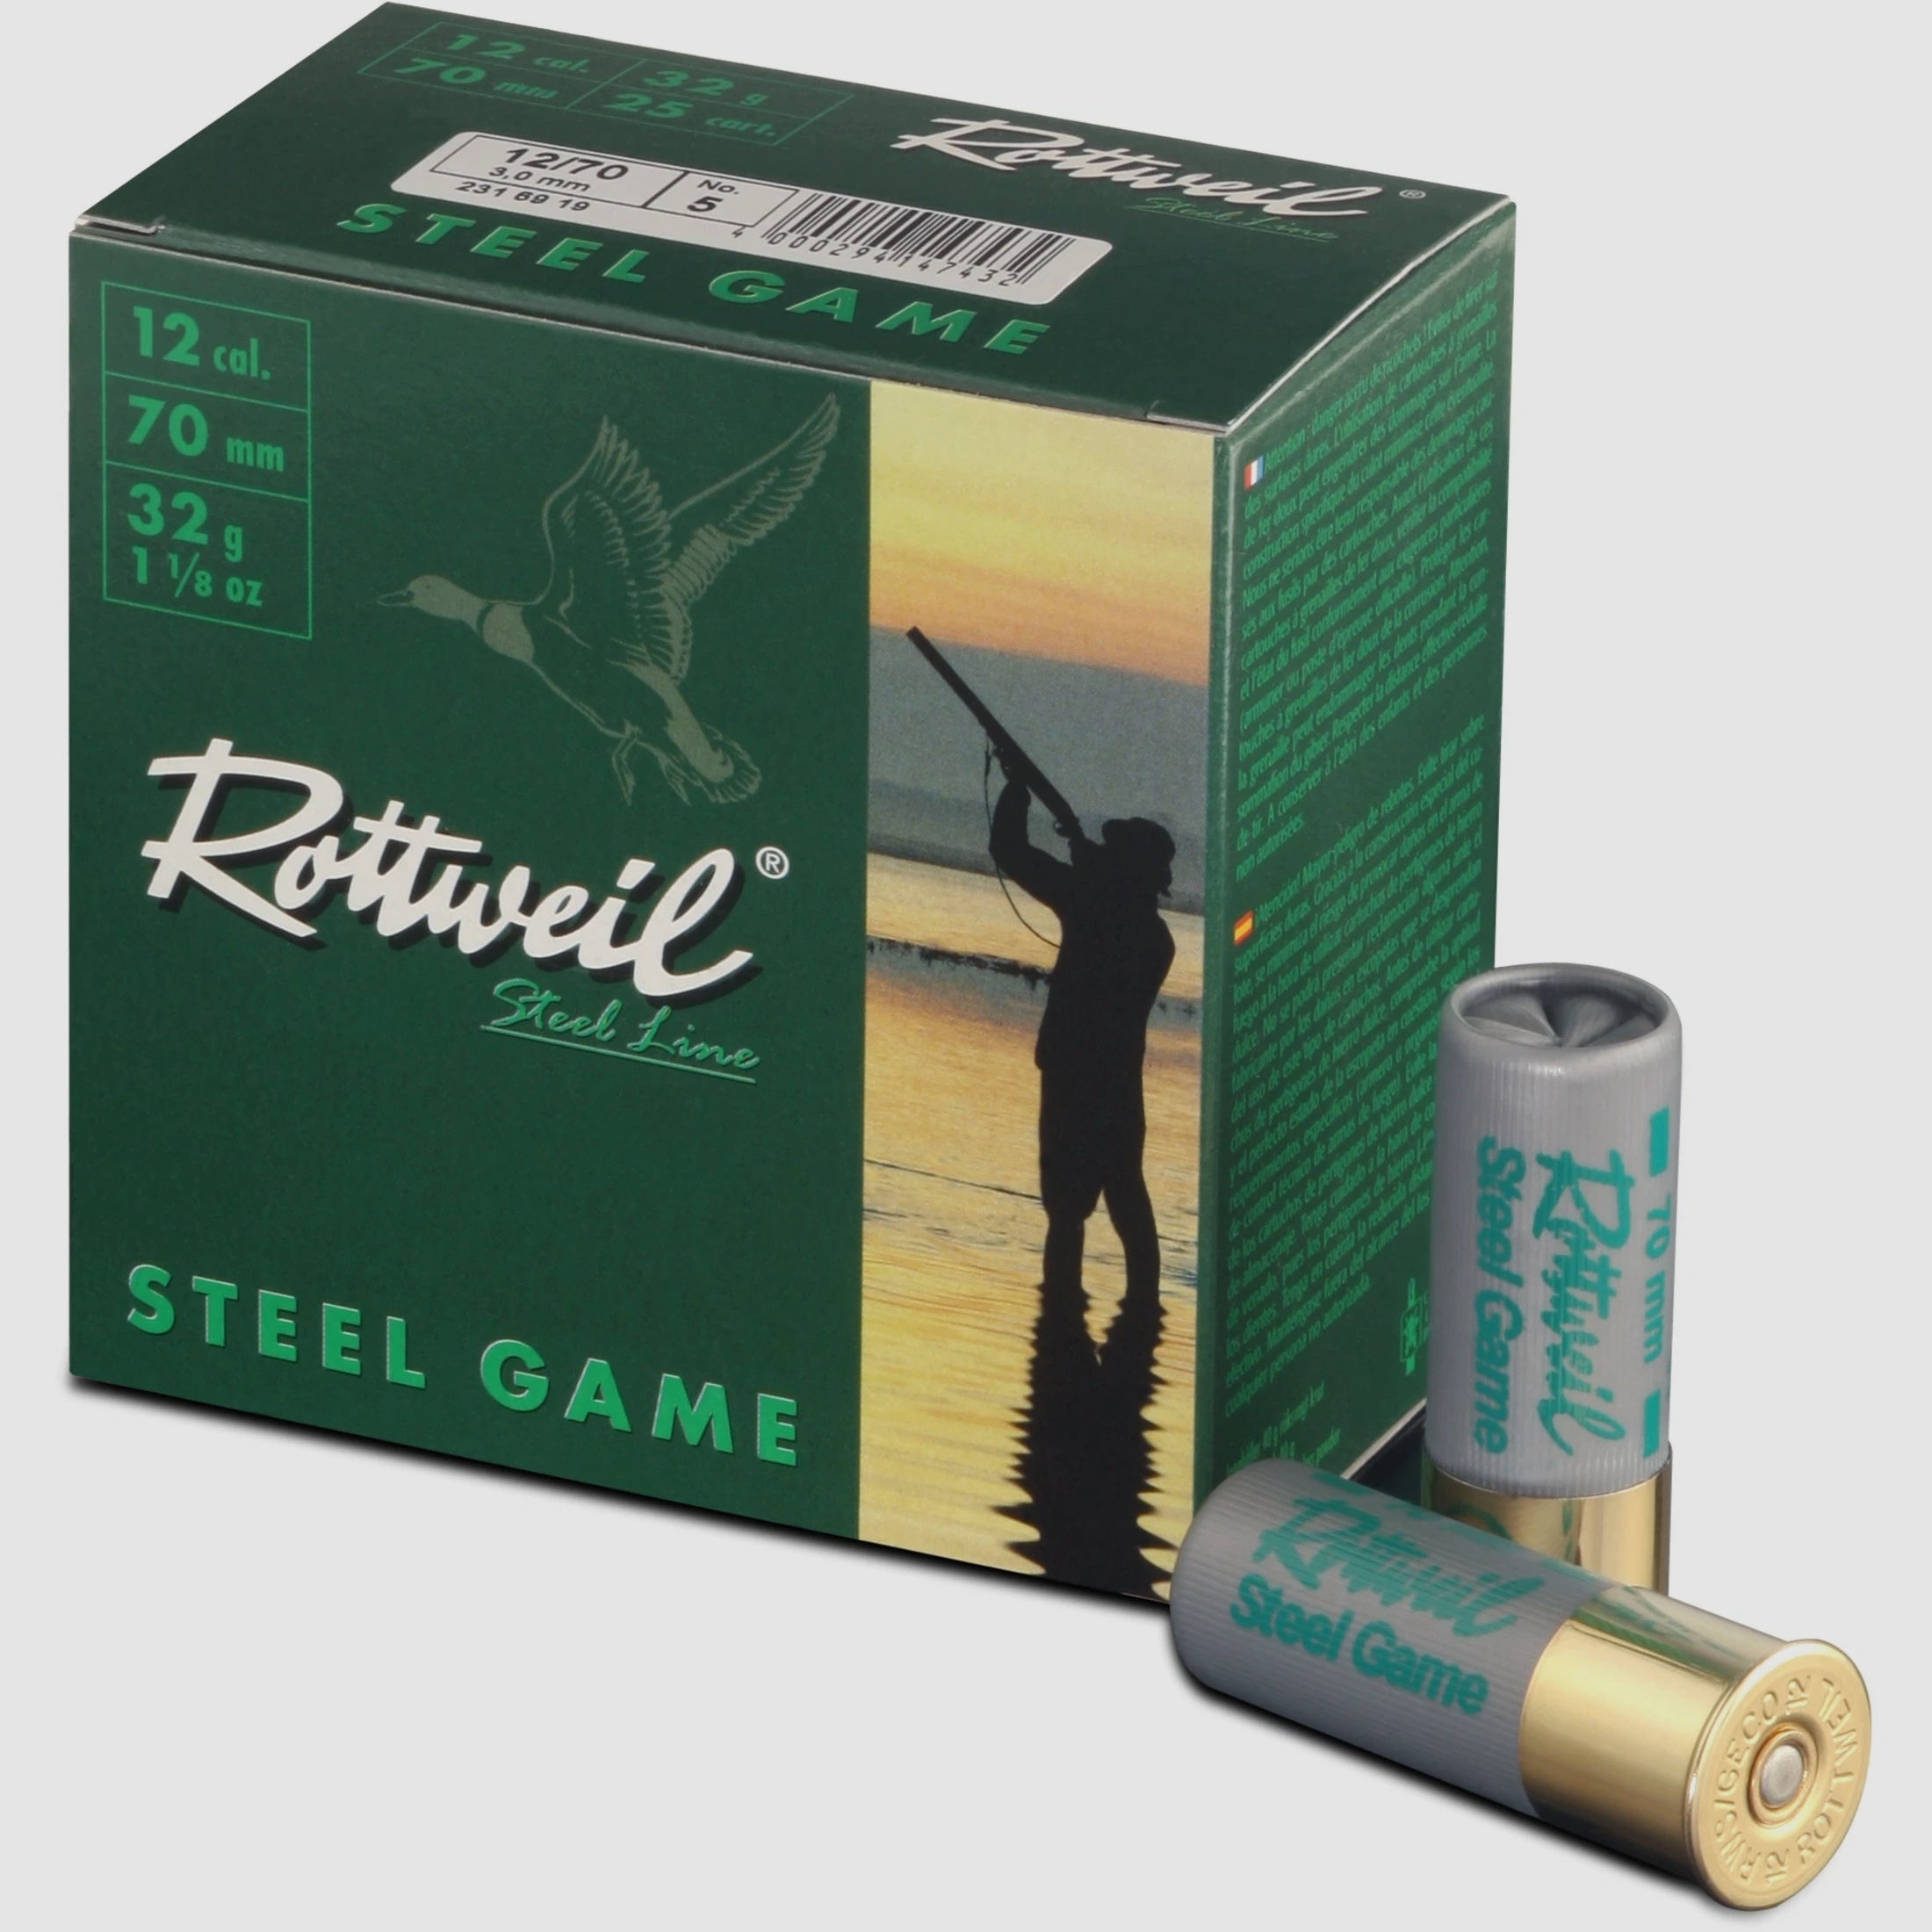 ROTTWEIL-Steel Game 12/70 3,25mm Plastik 25er Pack.